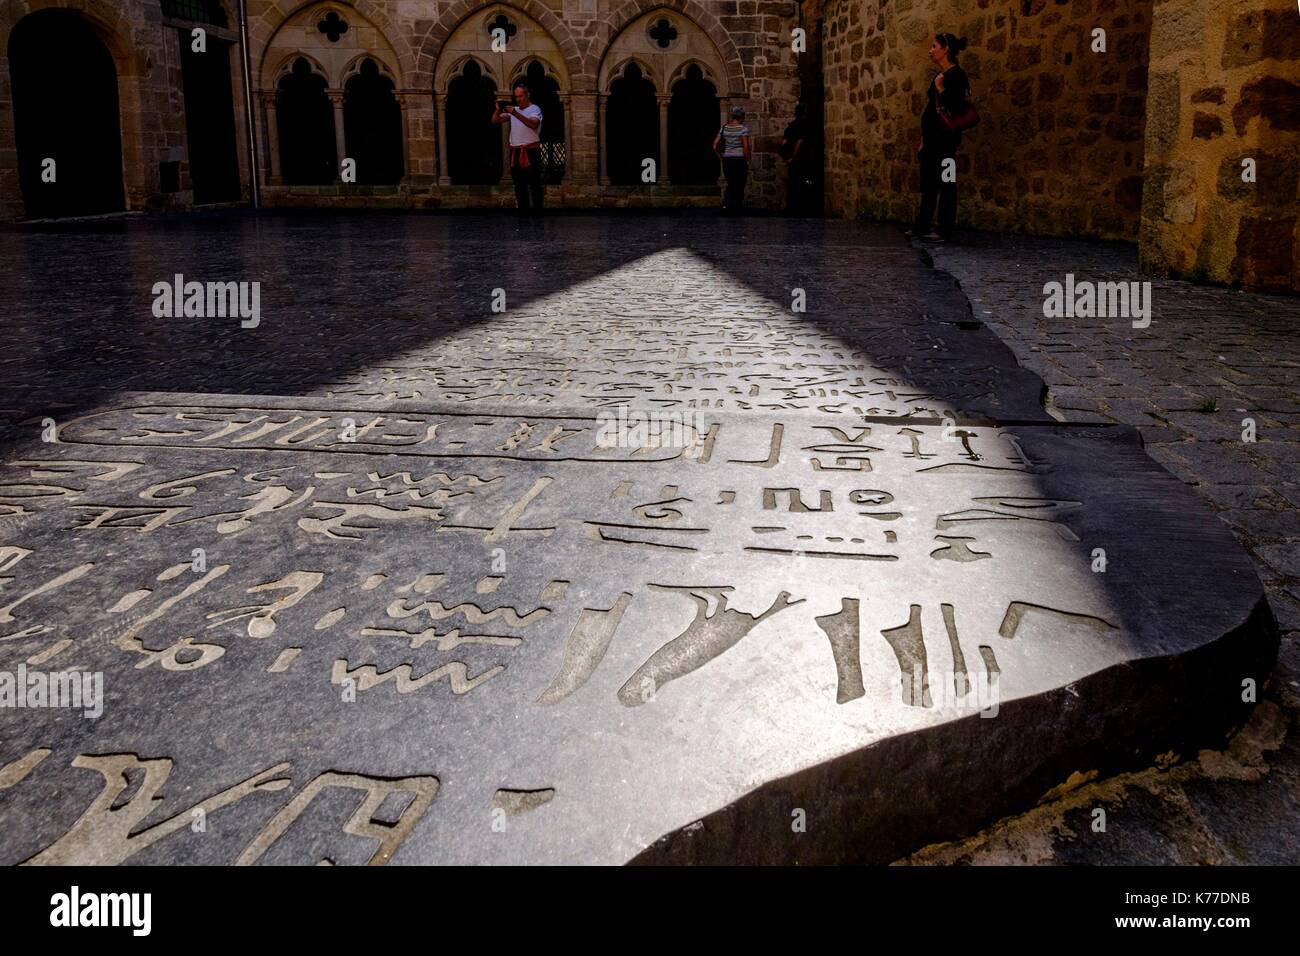 Francia, Lot, Quercy, Figeac, piazza des Ecritures, riproduzione della rosetta stone decifrato da Champollion Foto Stock